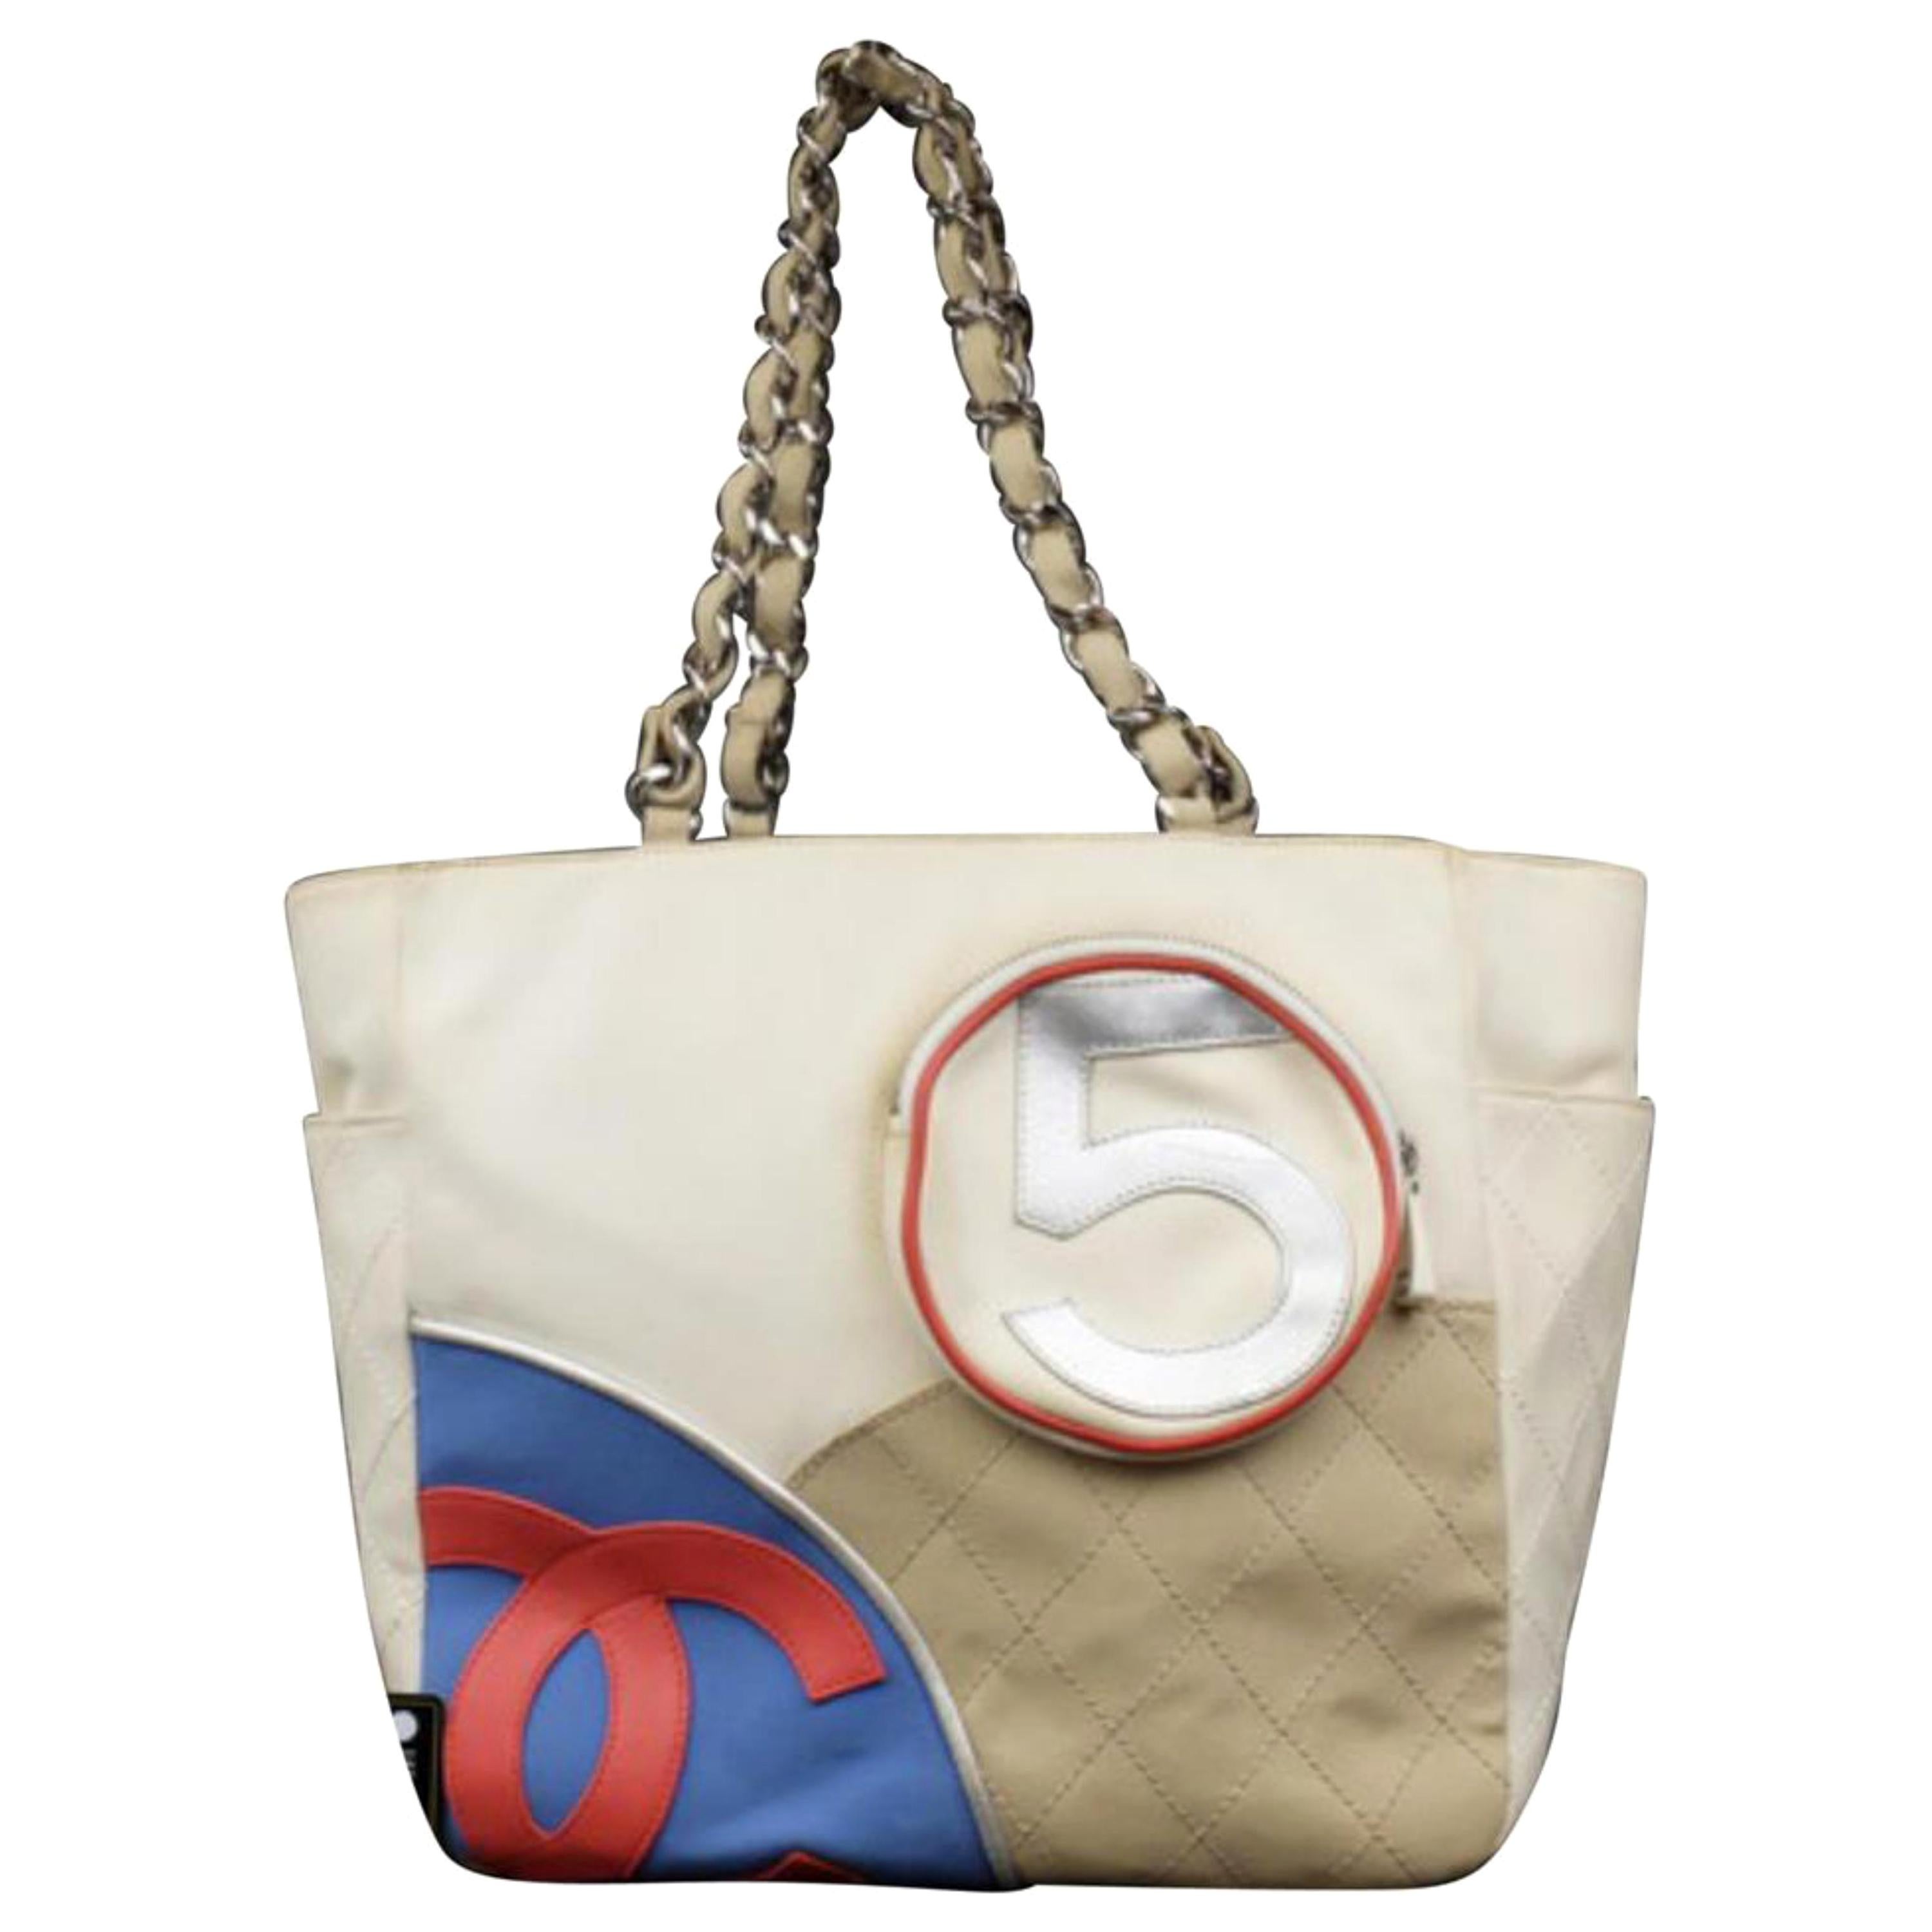 Chanel No. 5 Cc Logo Chain Tote 227956 Multicolor Canvas Shoulder Bag